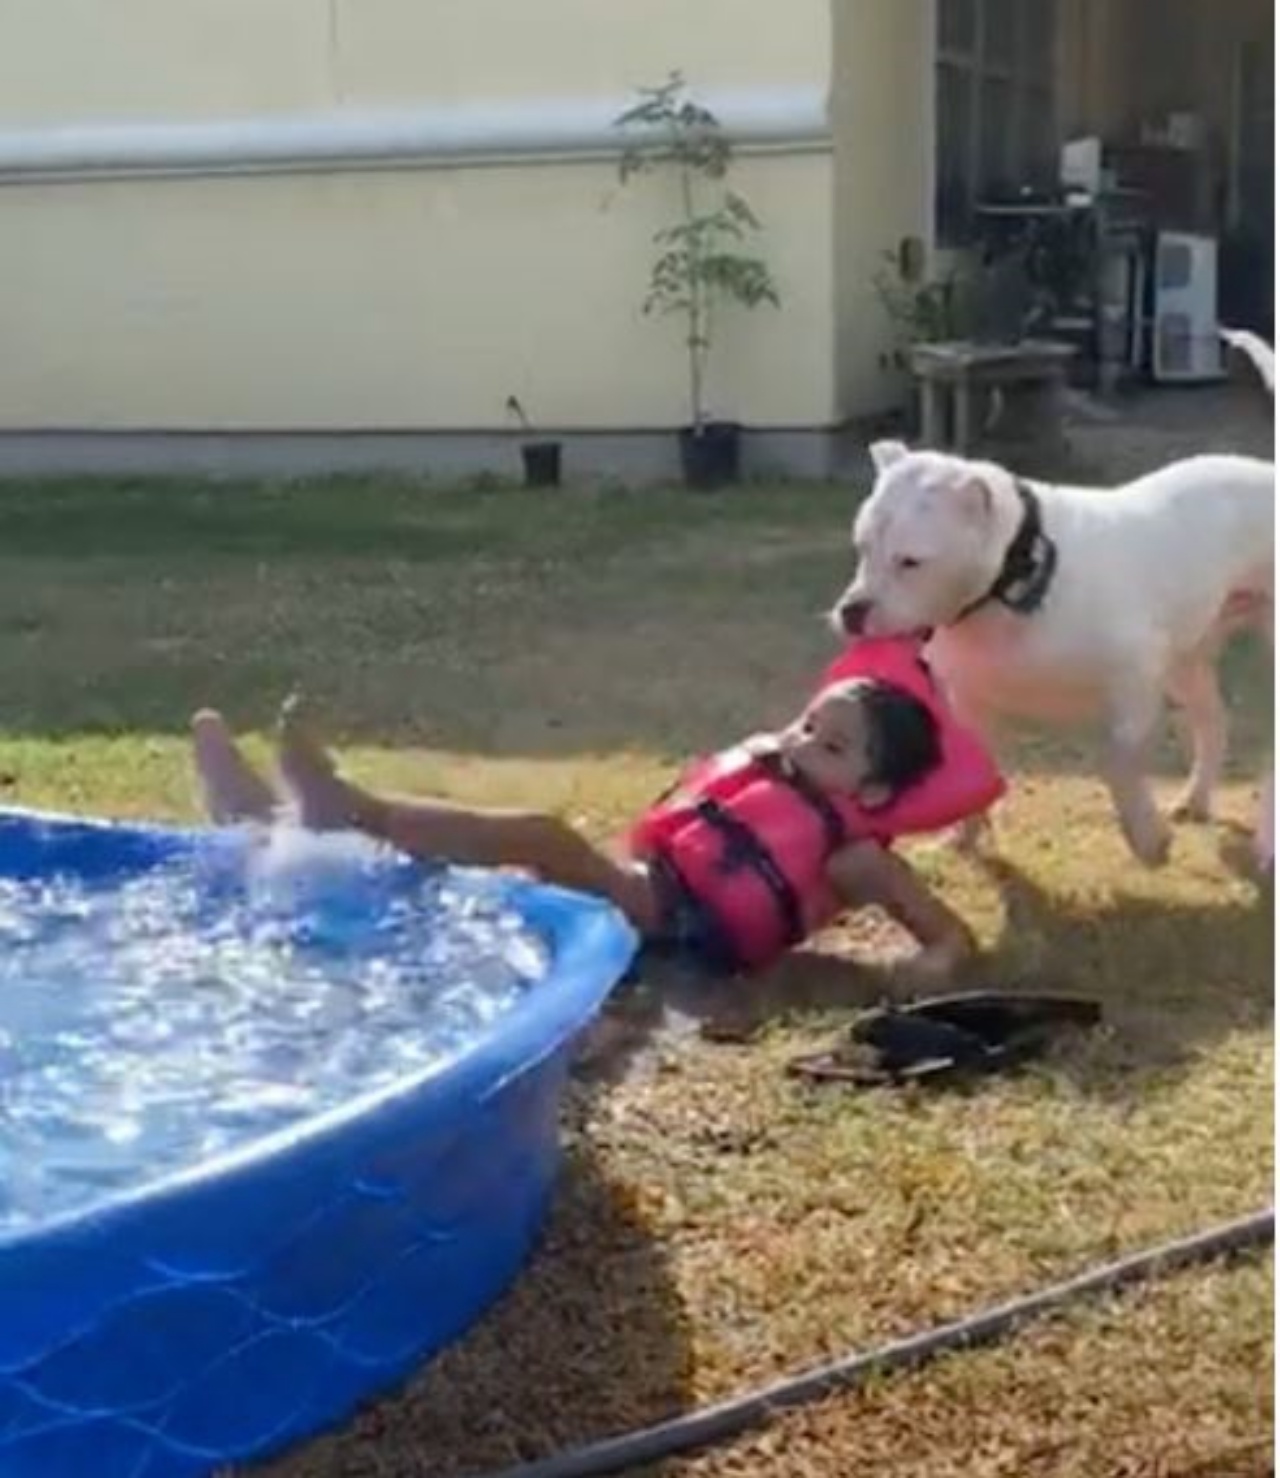 Un cane che afferra una bambina e la trascina fuori dalla piscina